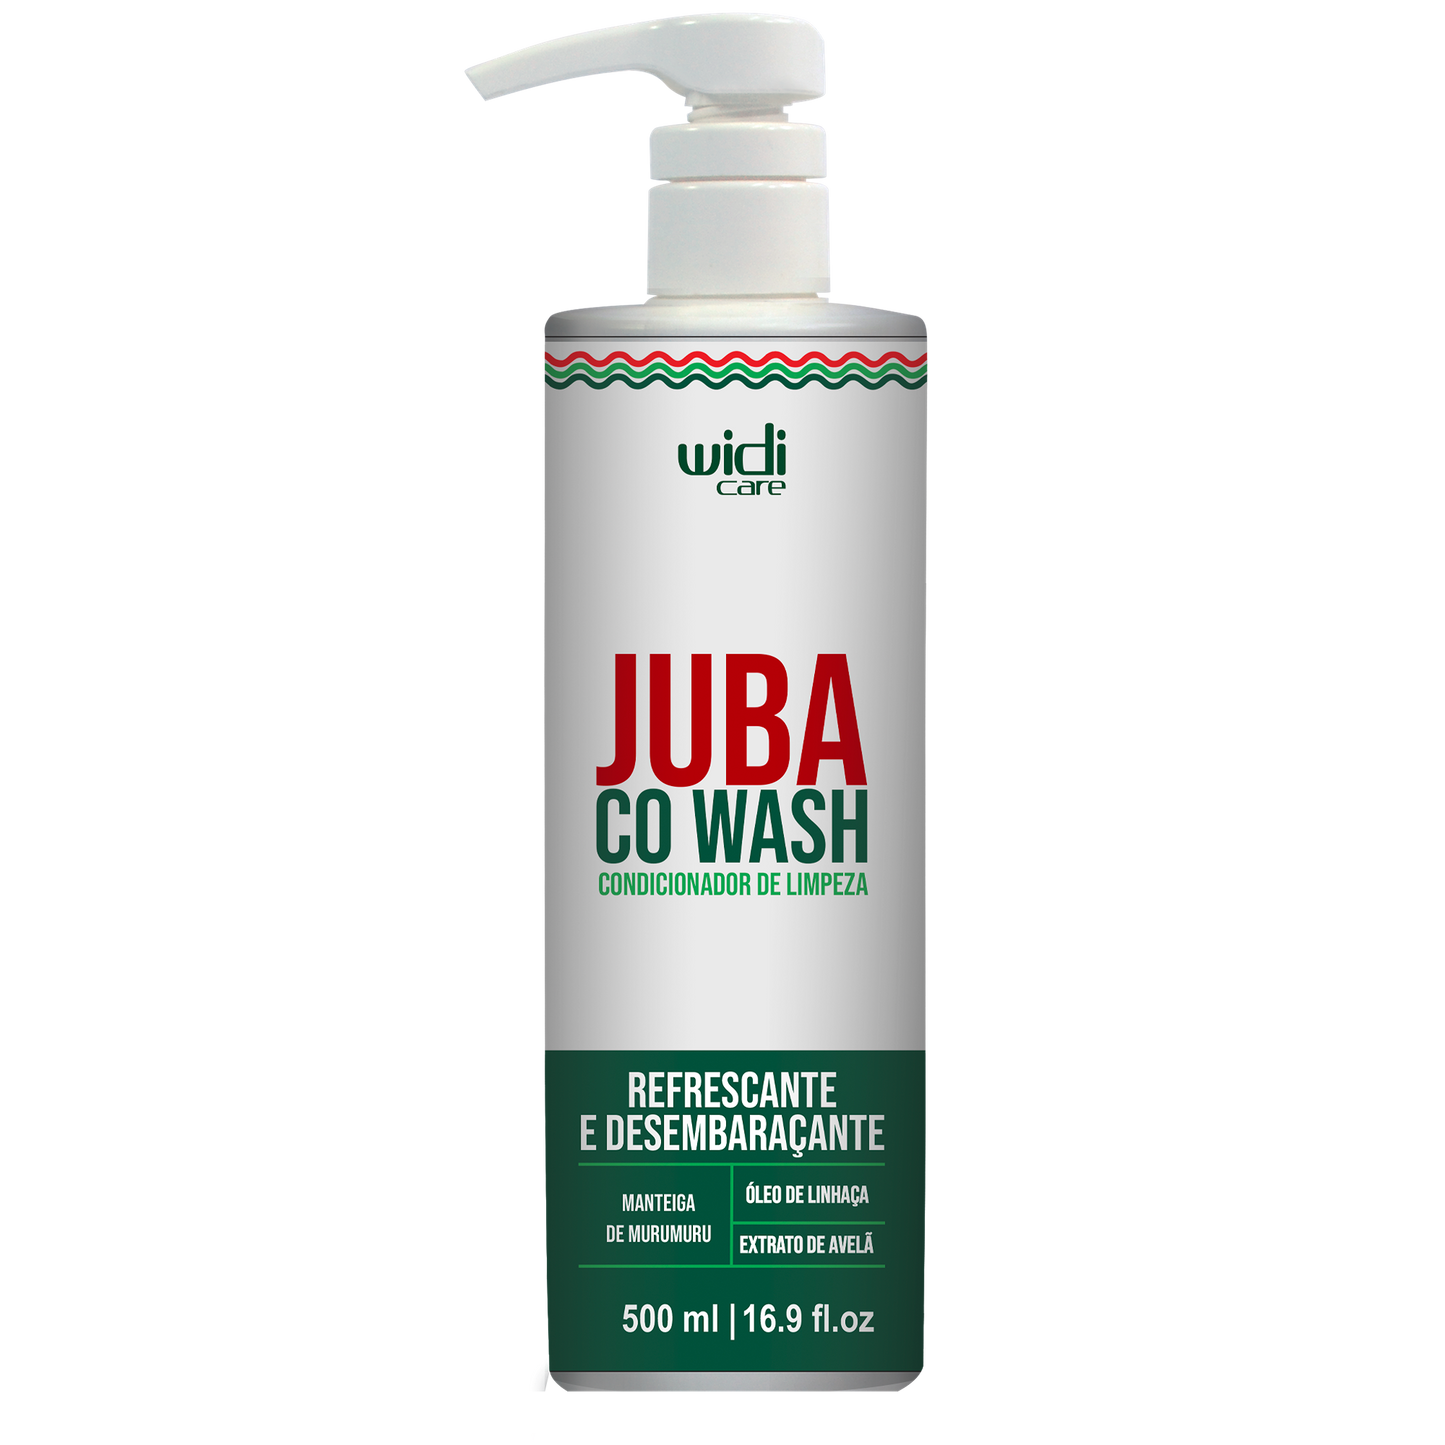 Widi Care Juba Co Wash 500ml